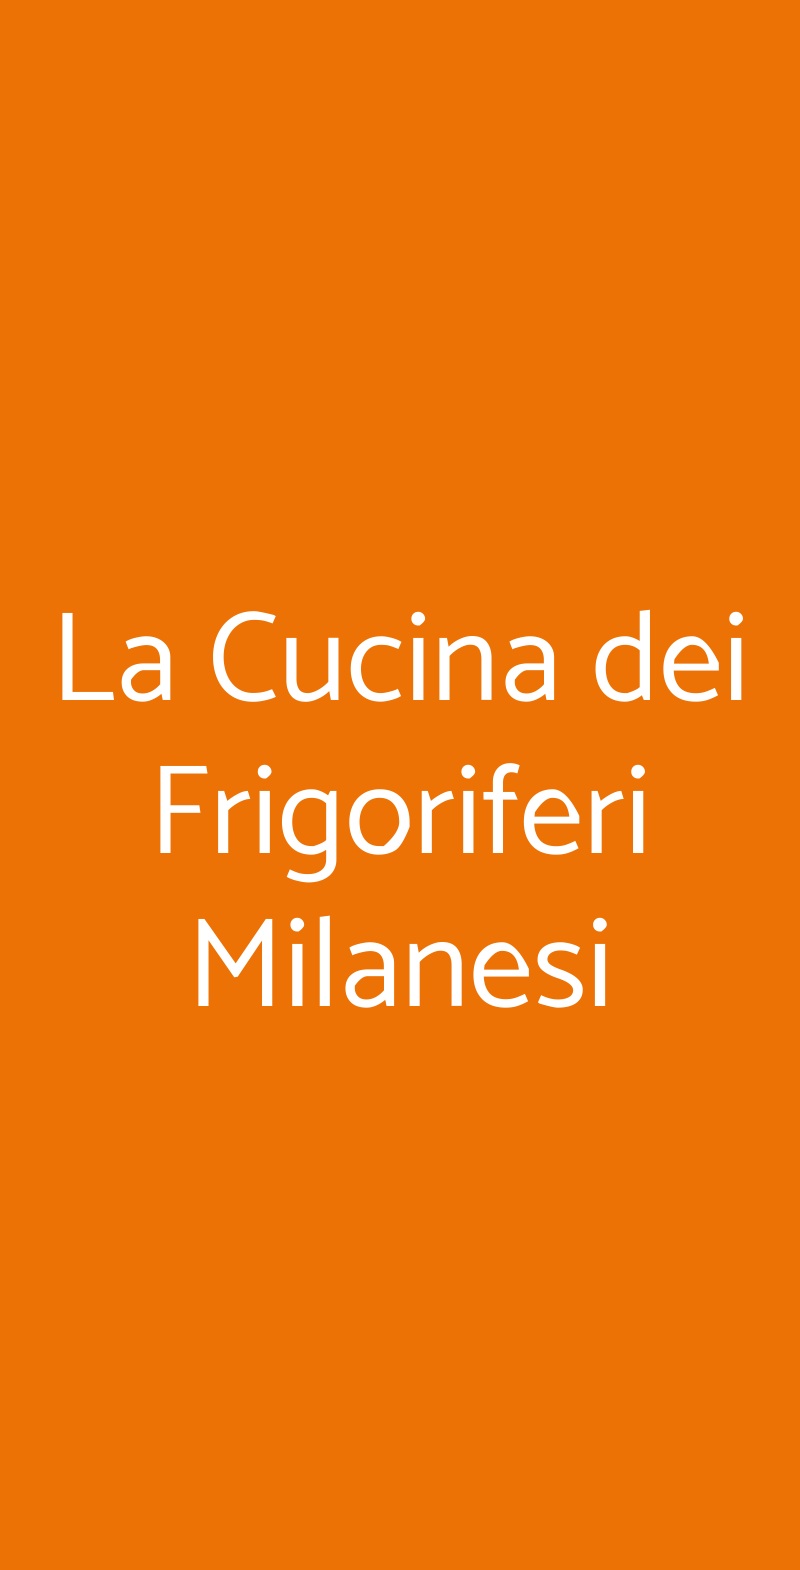 La Cucina dei Frigoriferi Milanesi Milano menù 1 pagina